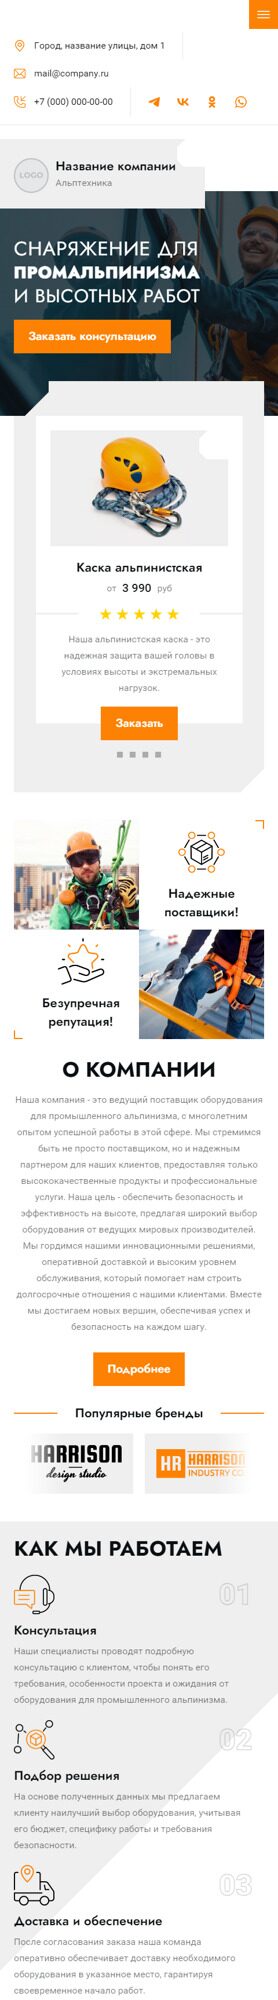 Готовый Сайт-Бизнес № 5751334 - Снаряжение для промышленного альпинизма и работы на высоте (Мобильная версия)